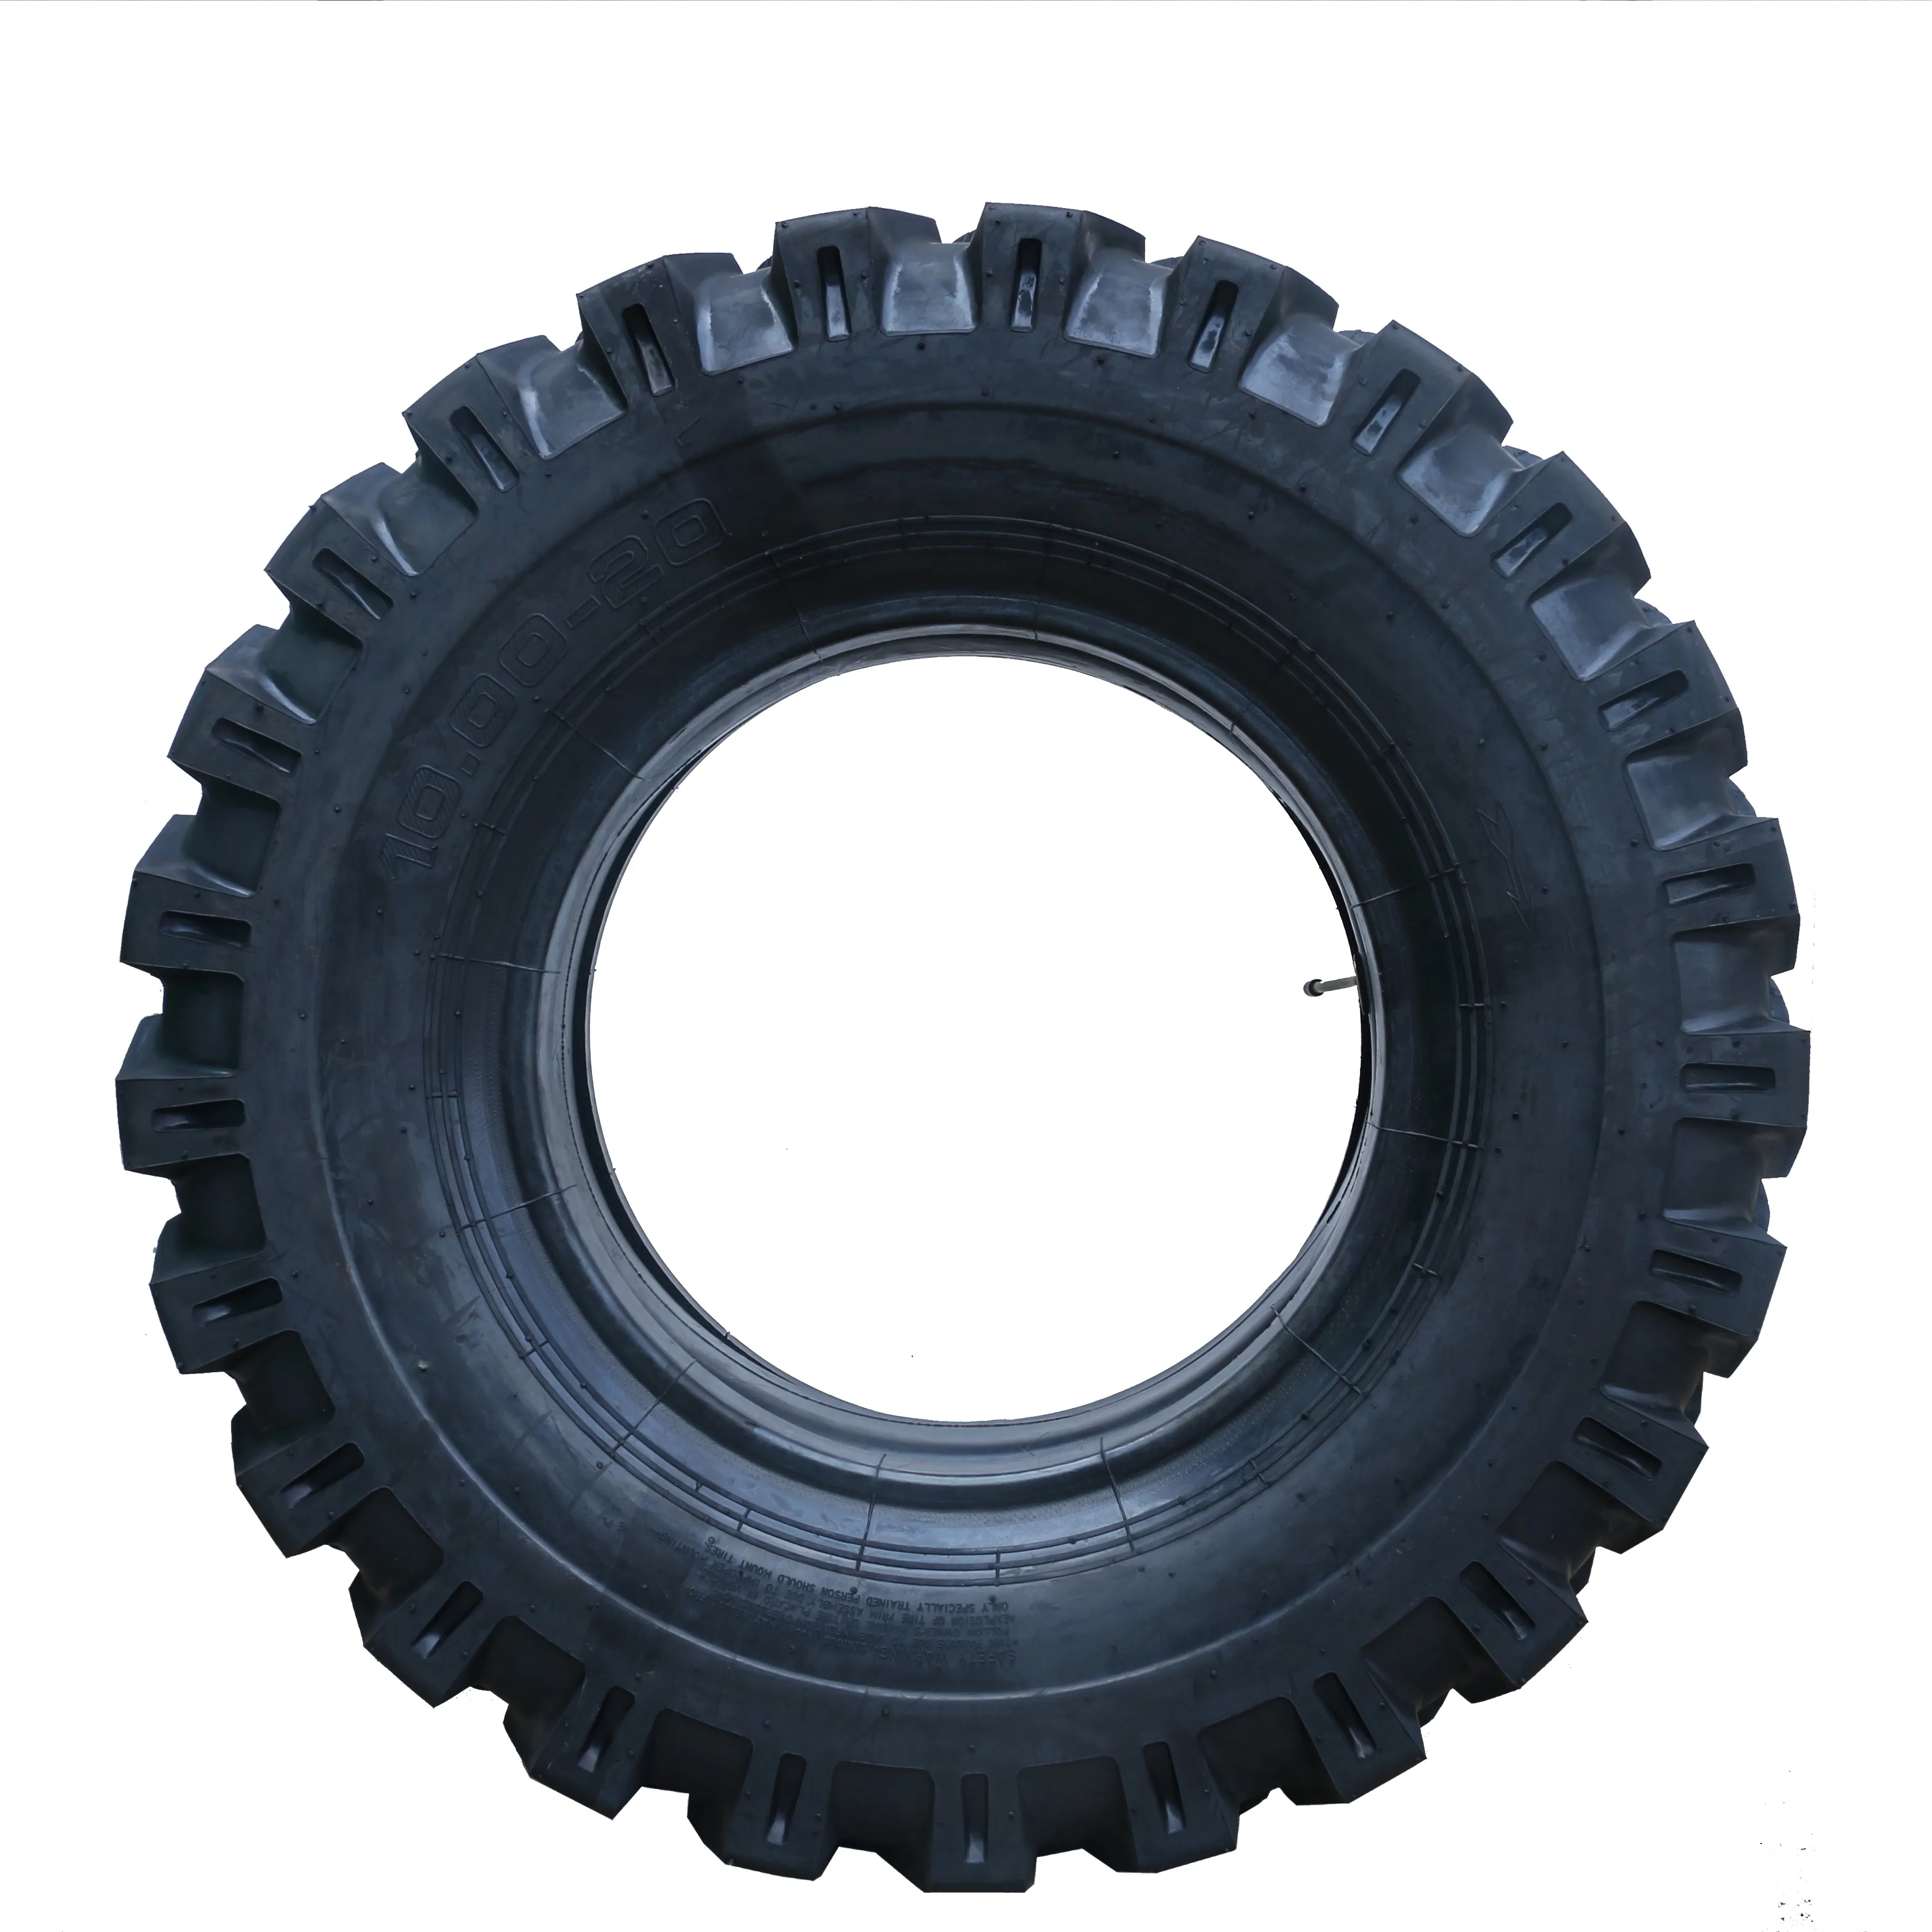 하이 퀄리티 STS300 OTR 타이어 10.00-20 9.00-20 트렌치 타이어 합리적인 가격의 10.00-20 otr 타이어